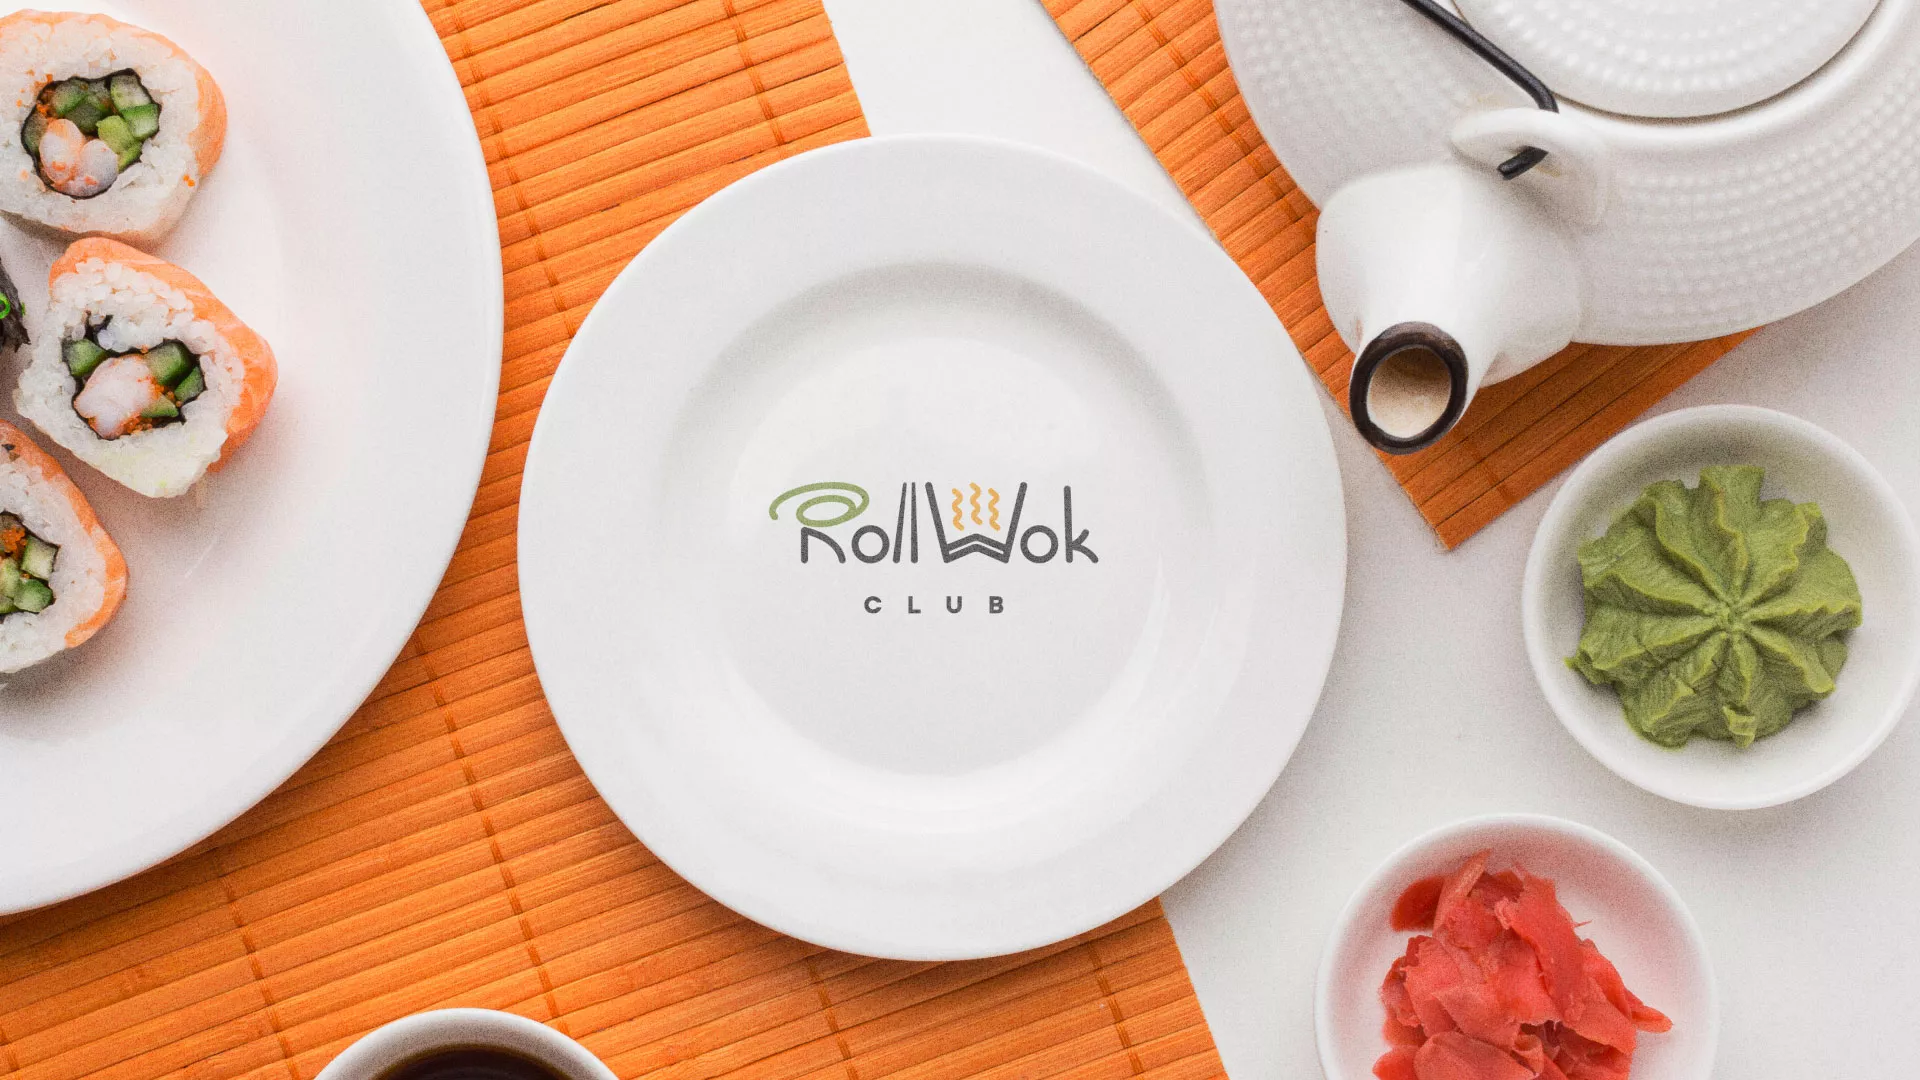 Разработка логотипа и фирменного стиля суши-бара «Roll Wok Club» в Соколе